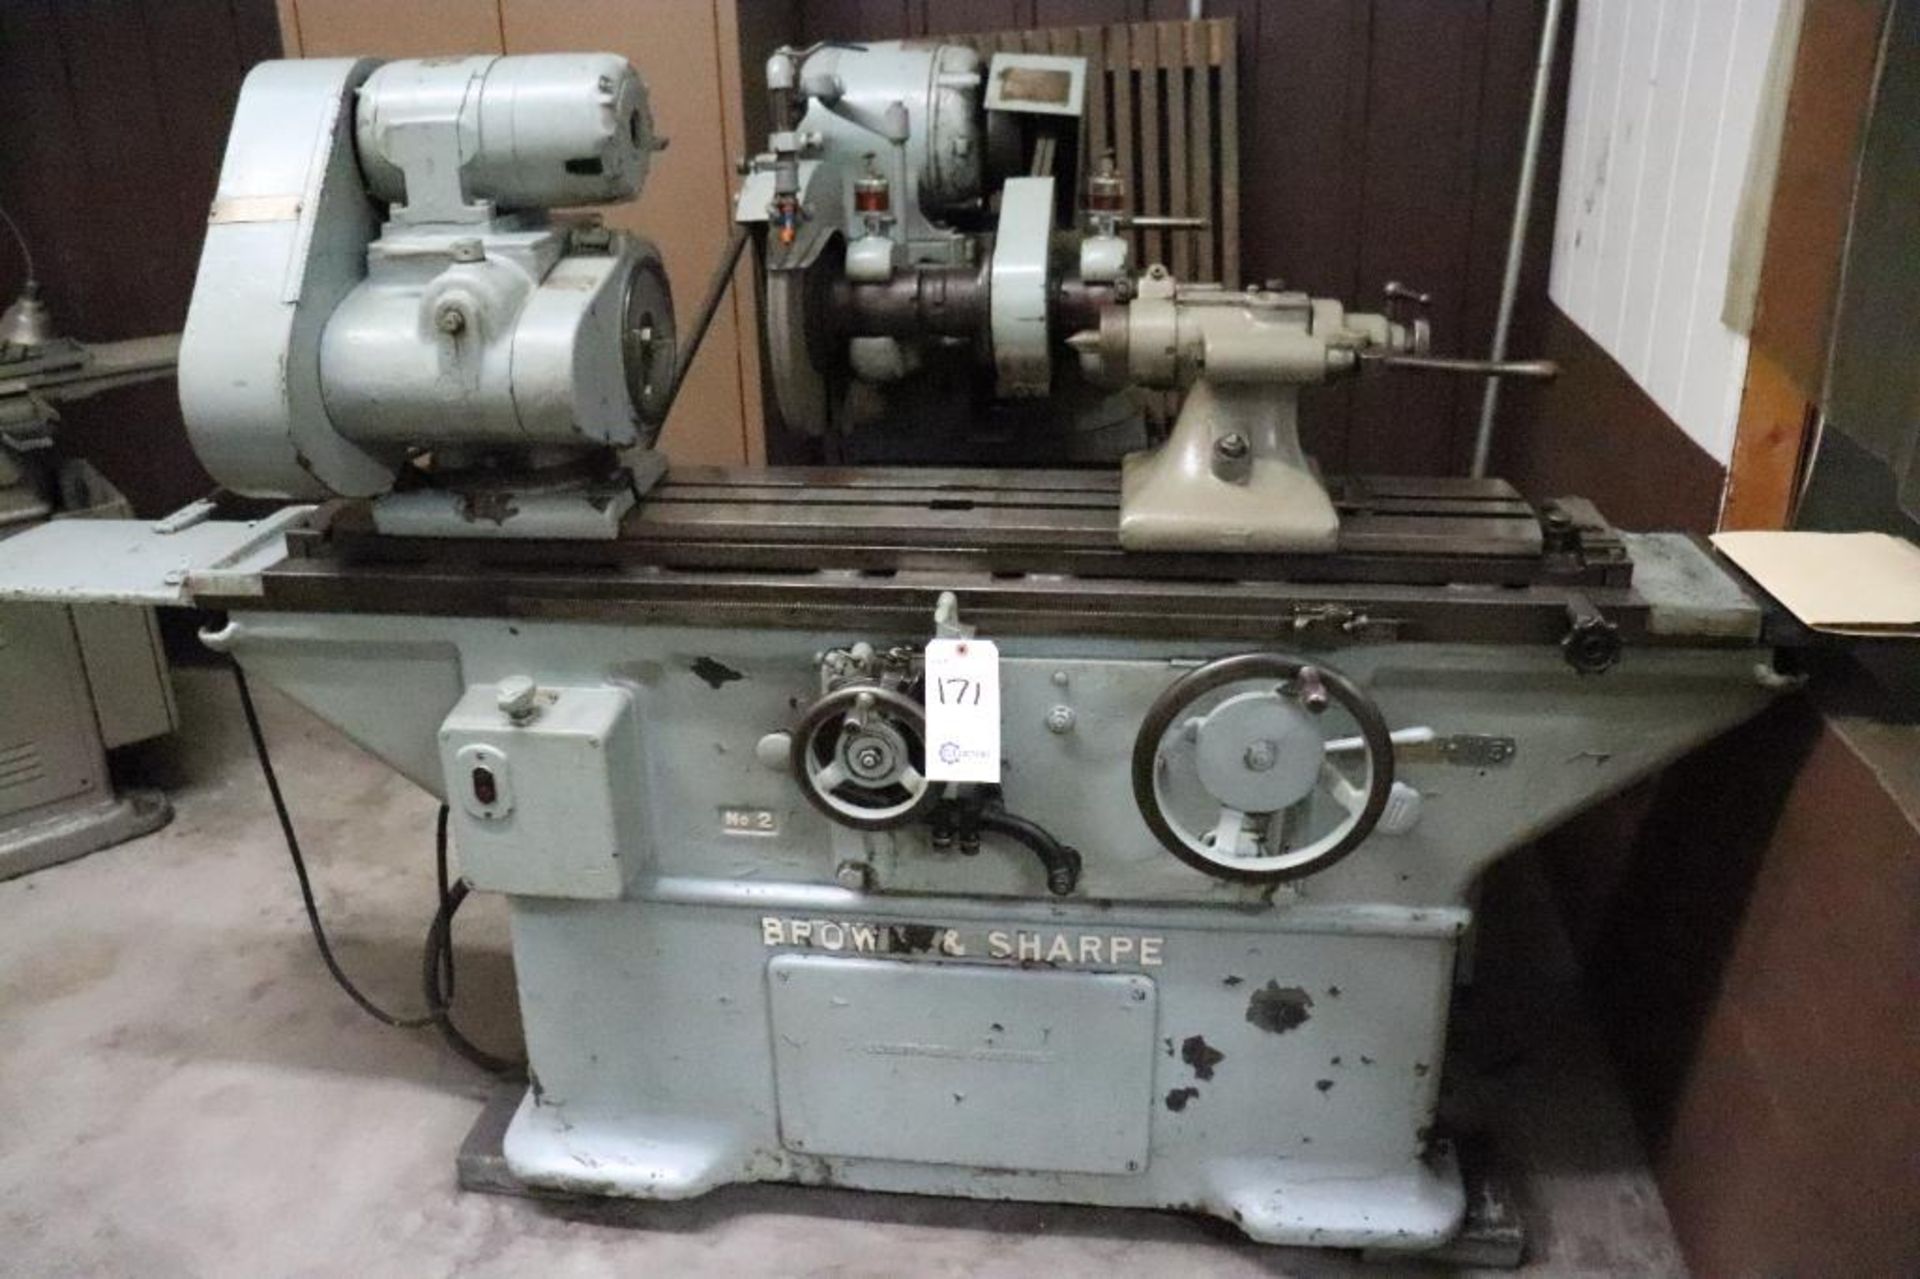 Brown & Sharpe No.2 universal grinding machine